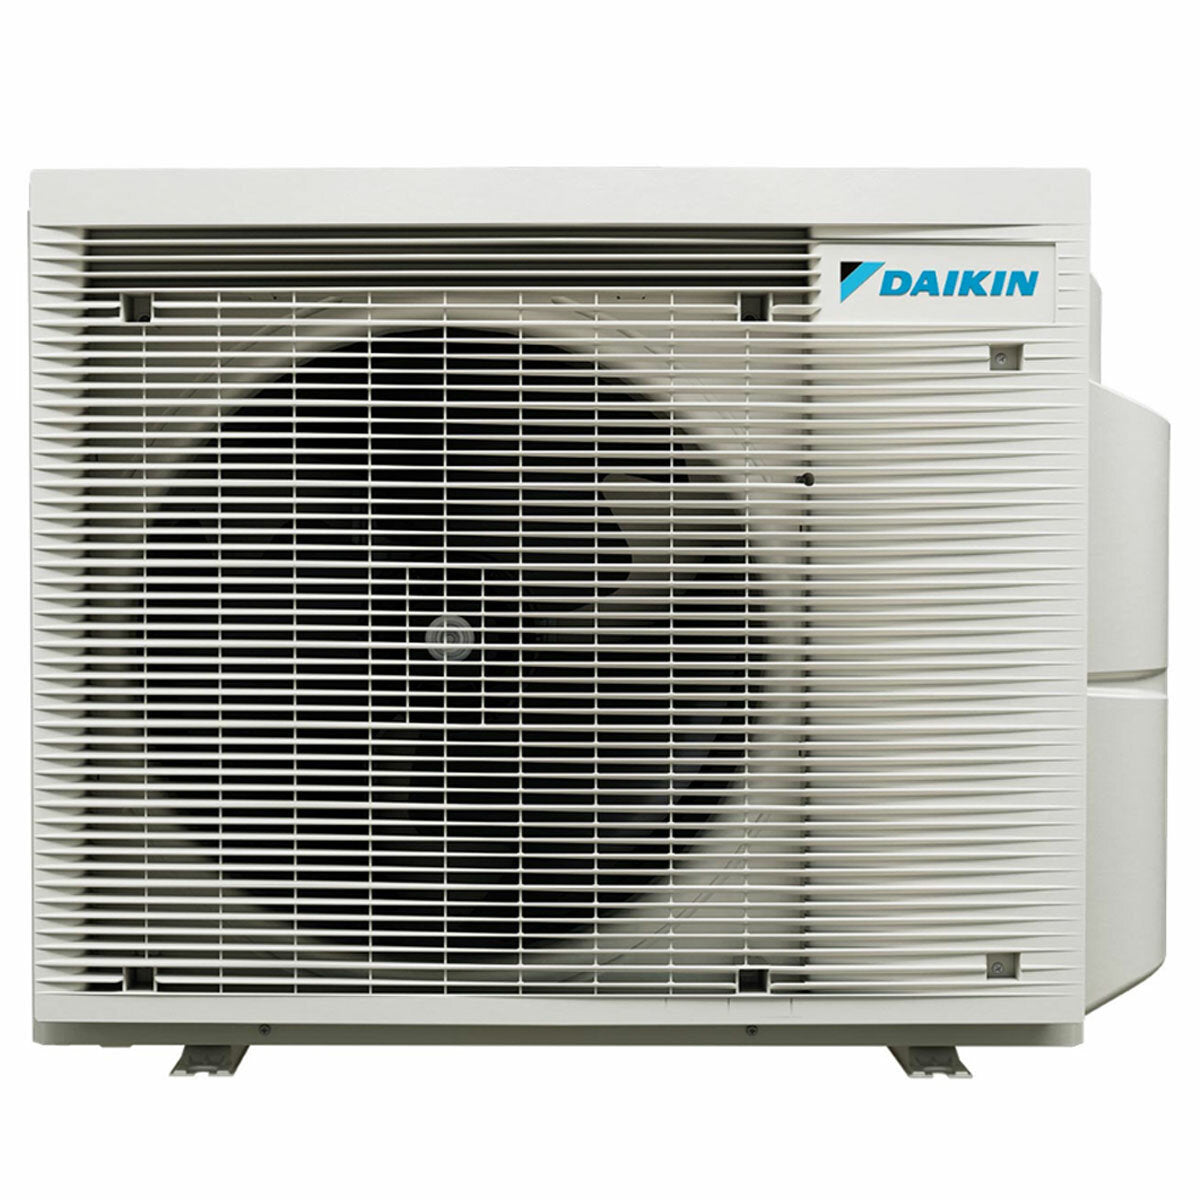 Daikin Stylish White Quadri-Split-Klimaanlage 7000+9000+9000+18000 BTU Inverter A++ WLAN-Außeneinheit 7,4 kW